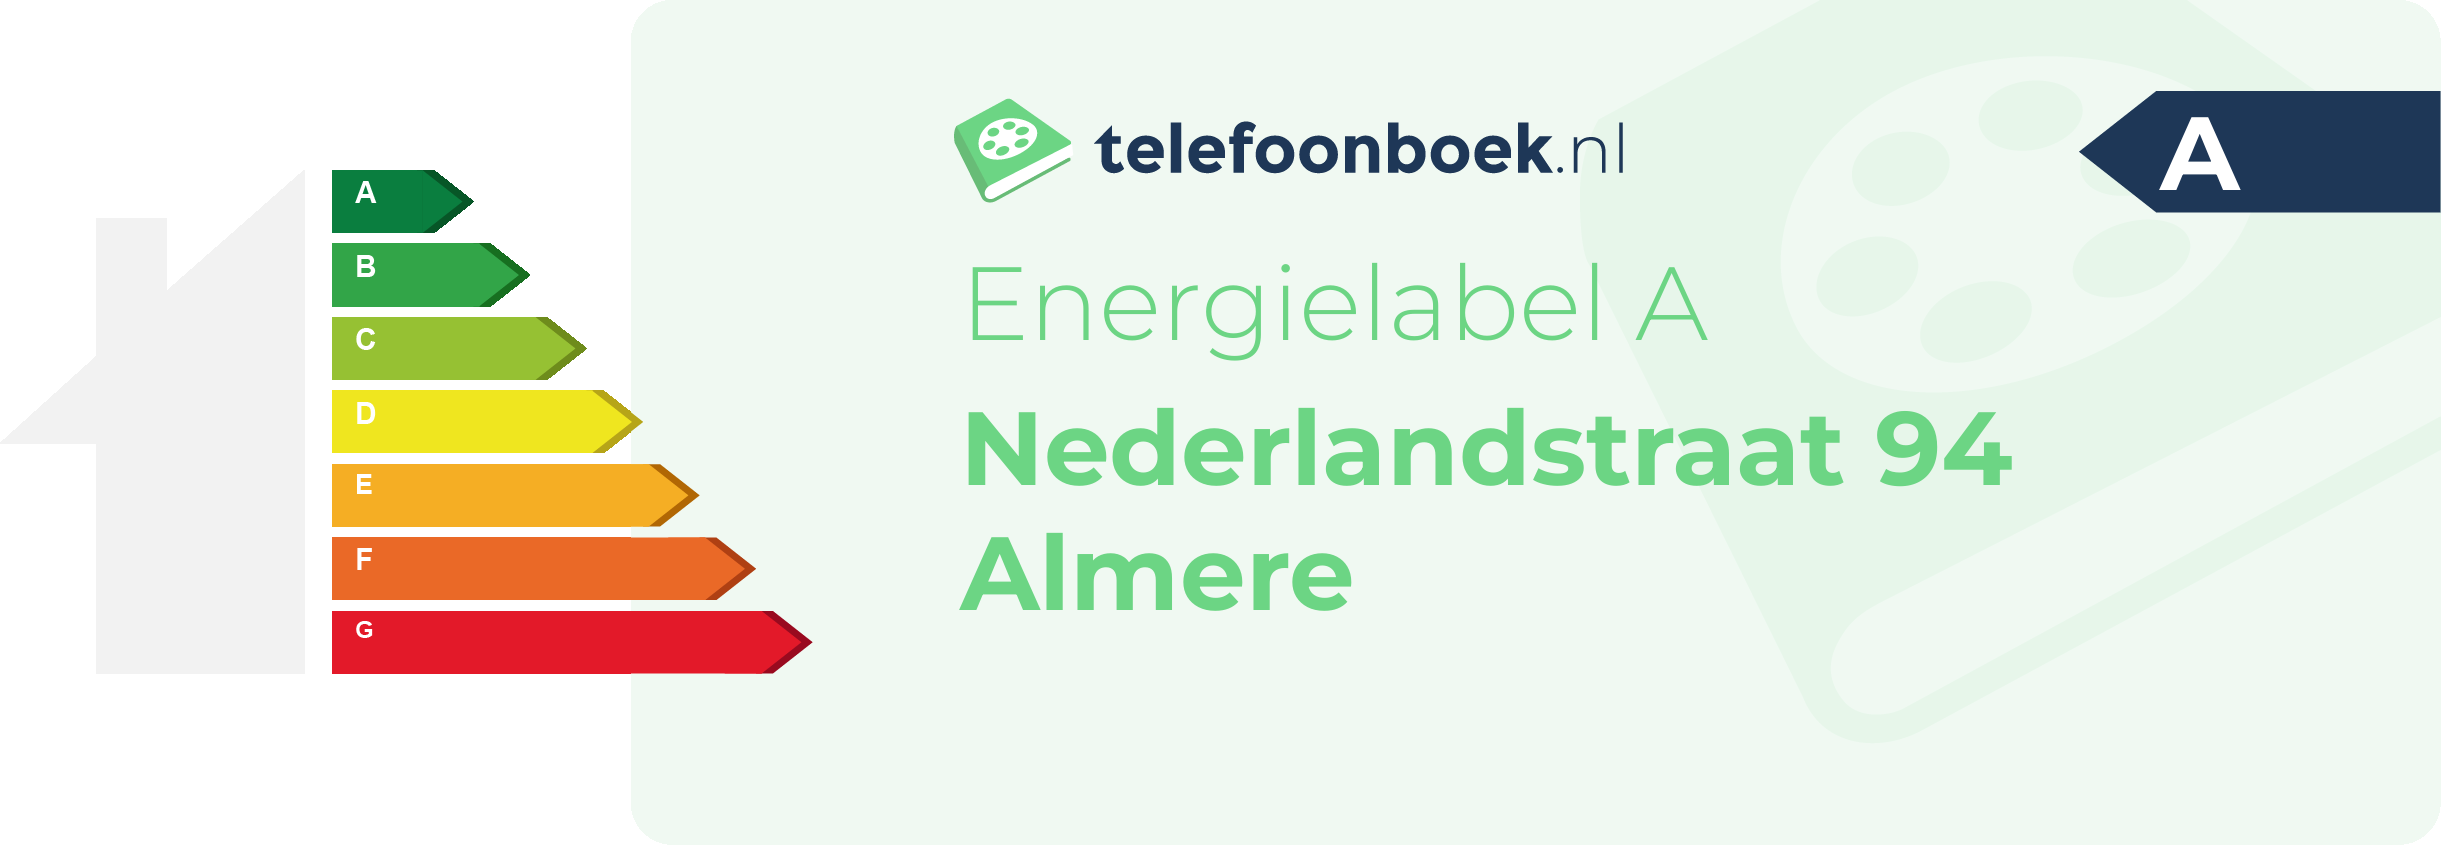 Energielabel Nederlandstraat 94 Almere